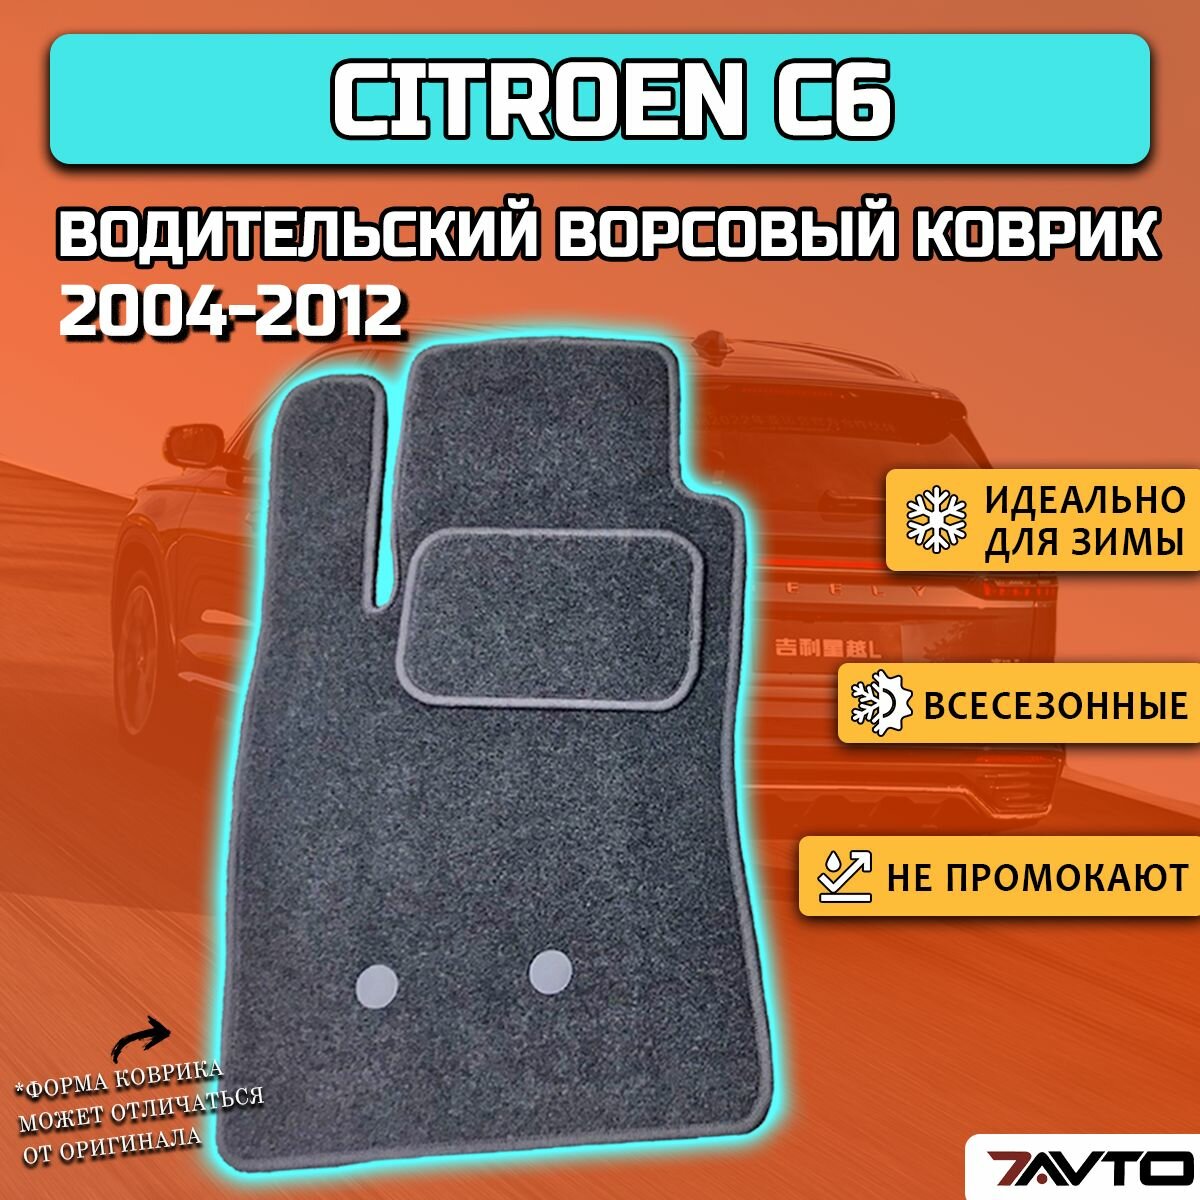 Водительский ворсовый коврик ECO на Citroen C6 2004-2012 / Ситроен Ц6